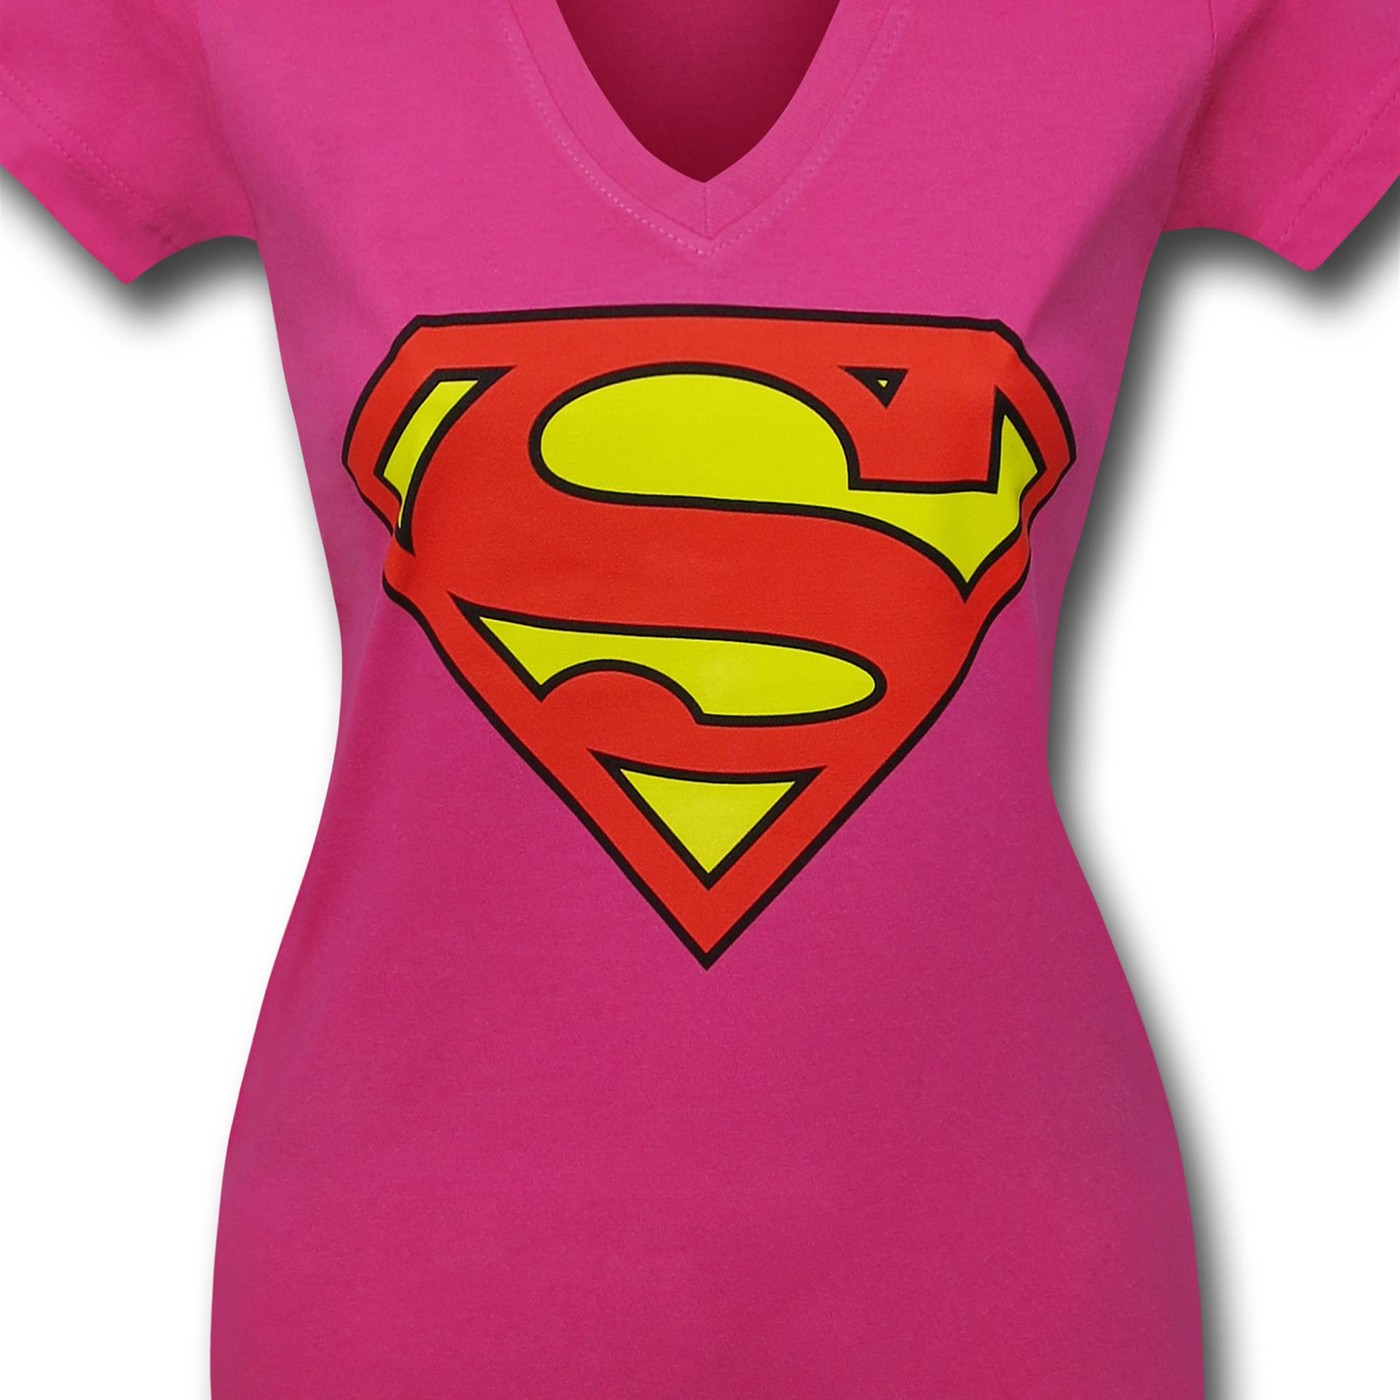 Superman Symbol on Pink Women's V-Neck